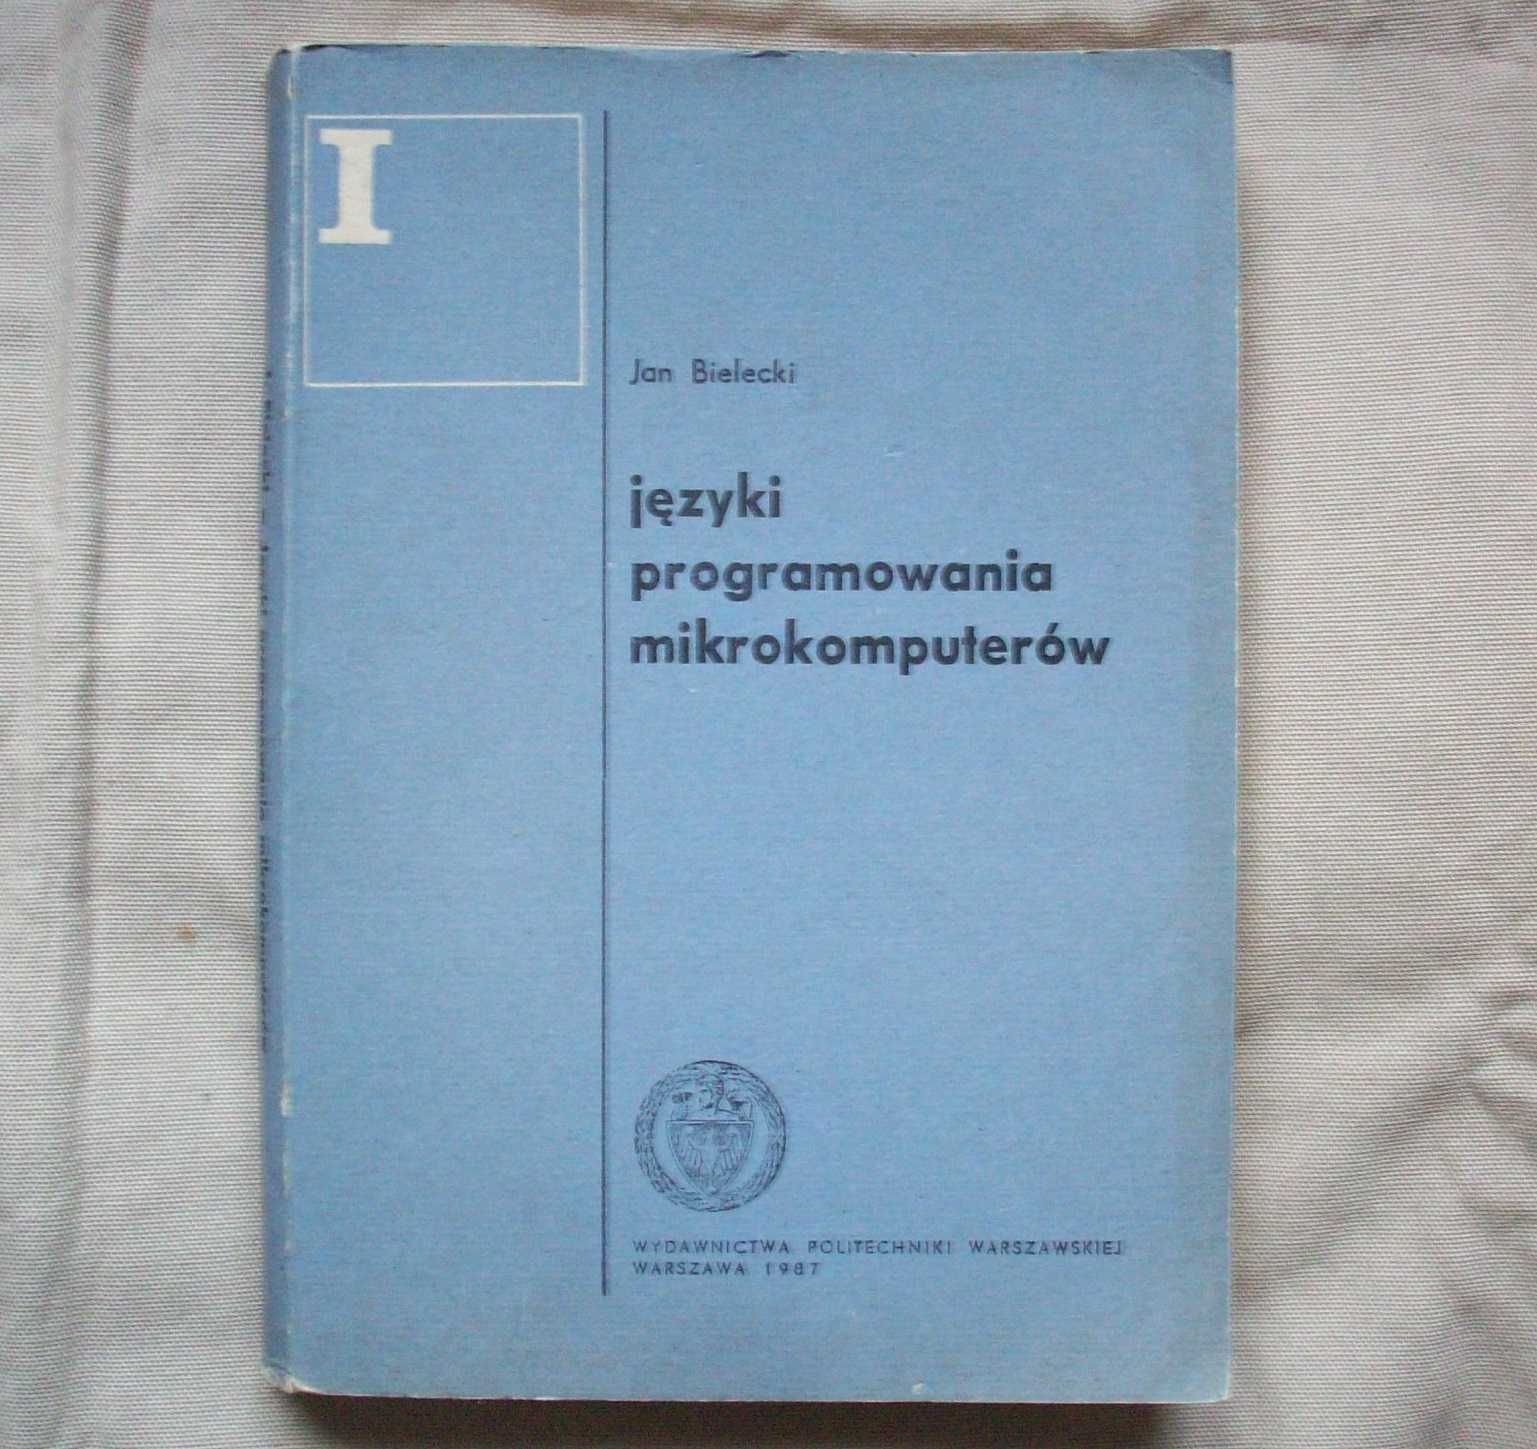 Języki programowania mikrokomputerów, J.Bielecki, 1987.